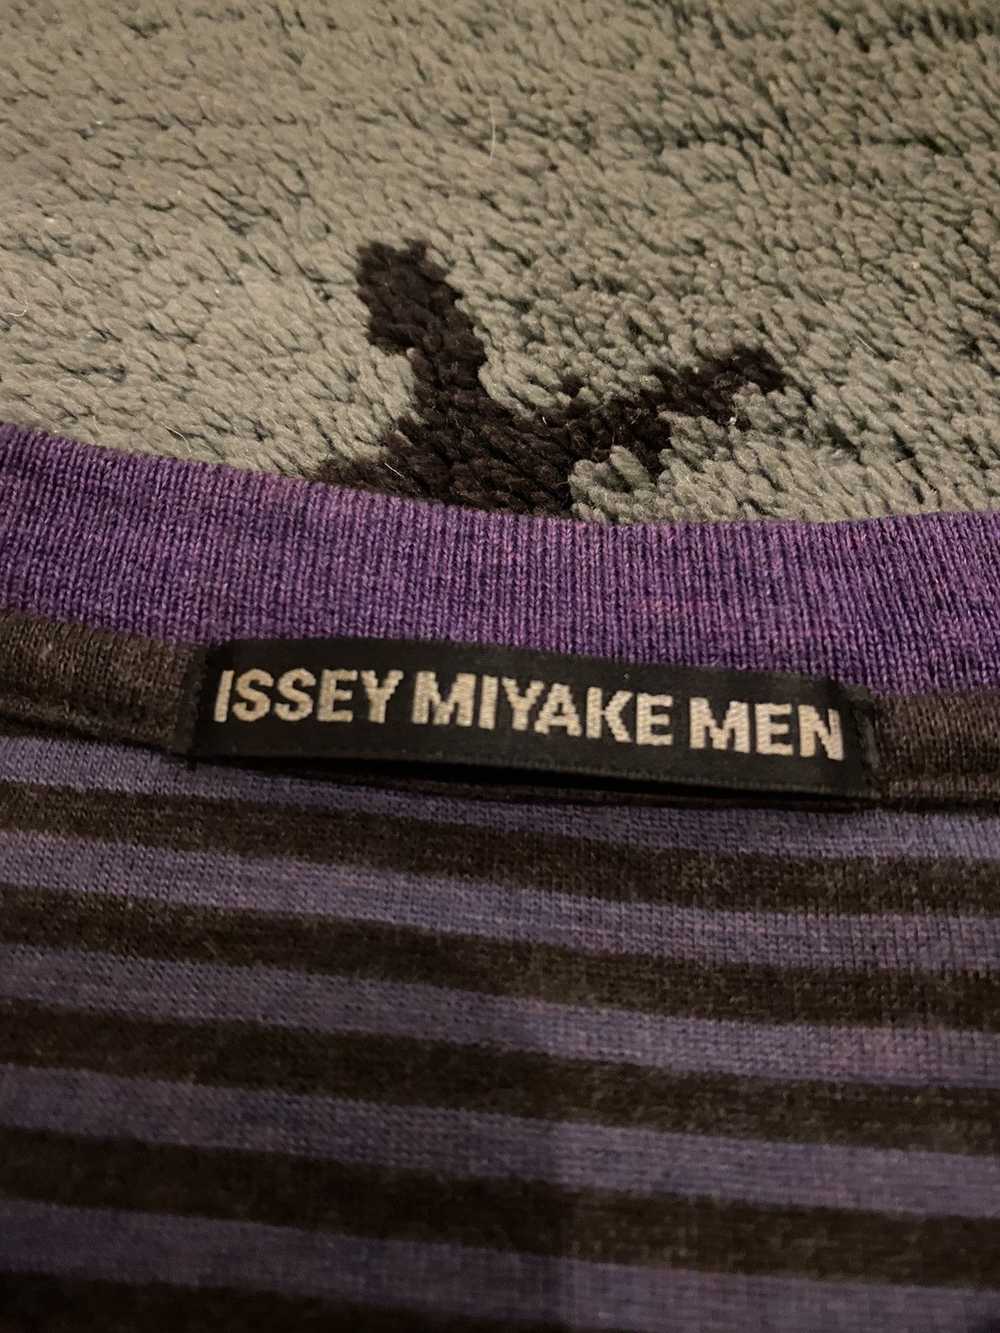 Issey Miyake Issey Miyake Men Stripe Knit Sweater - image 4